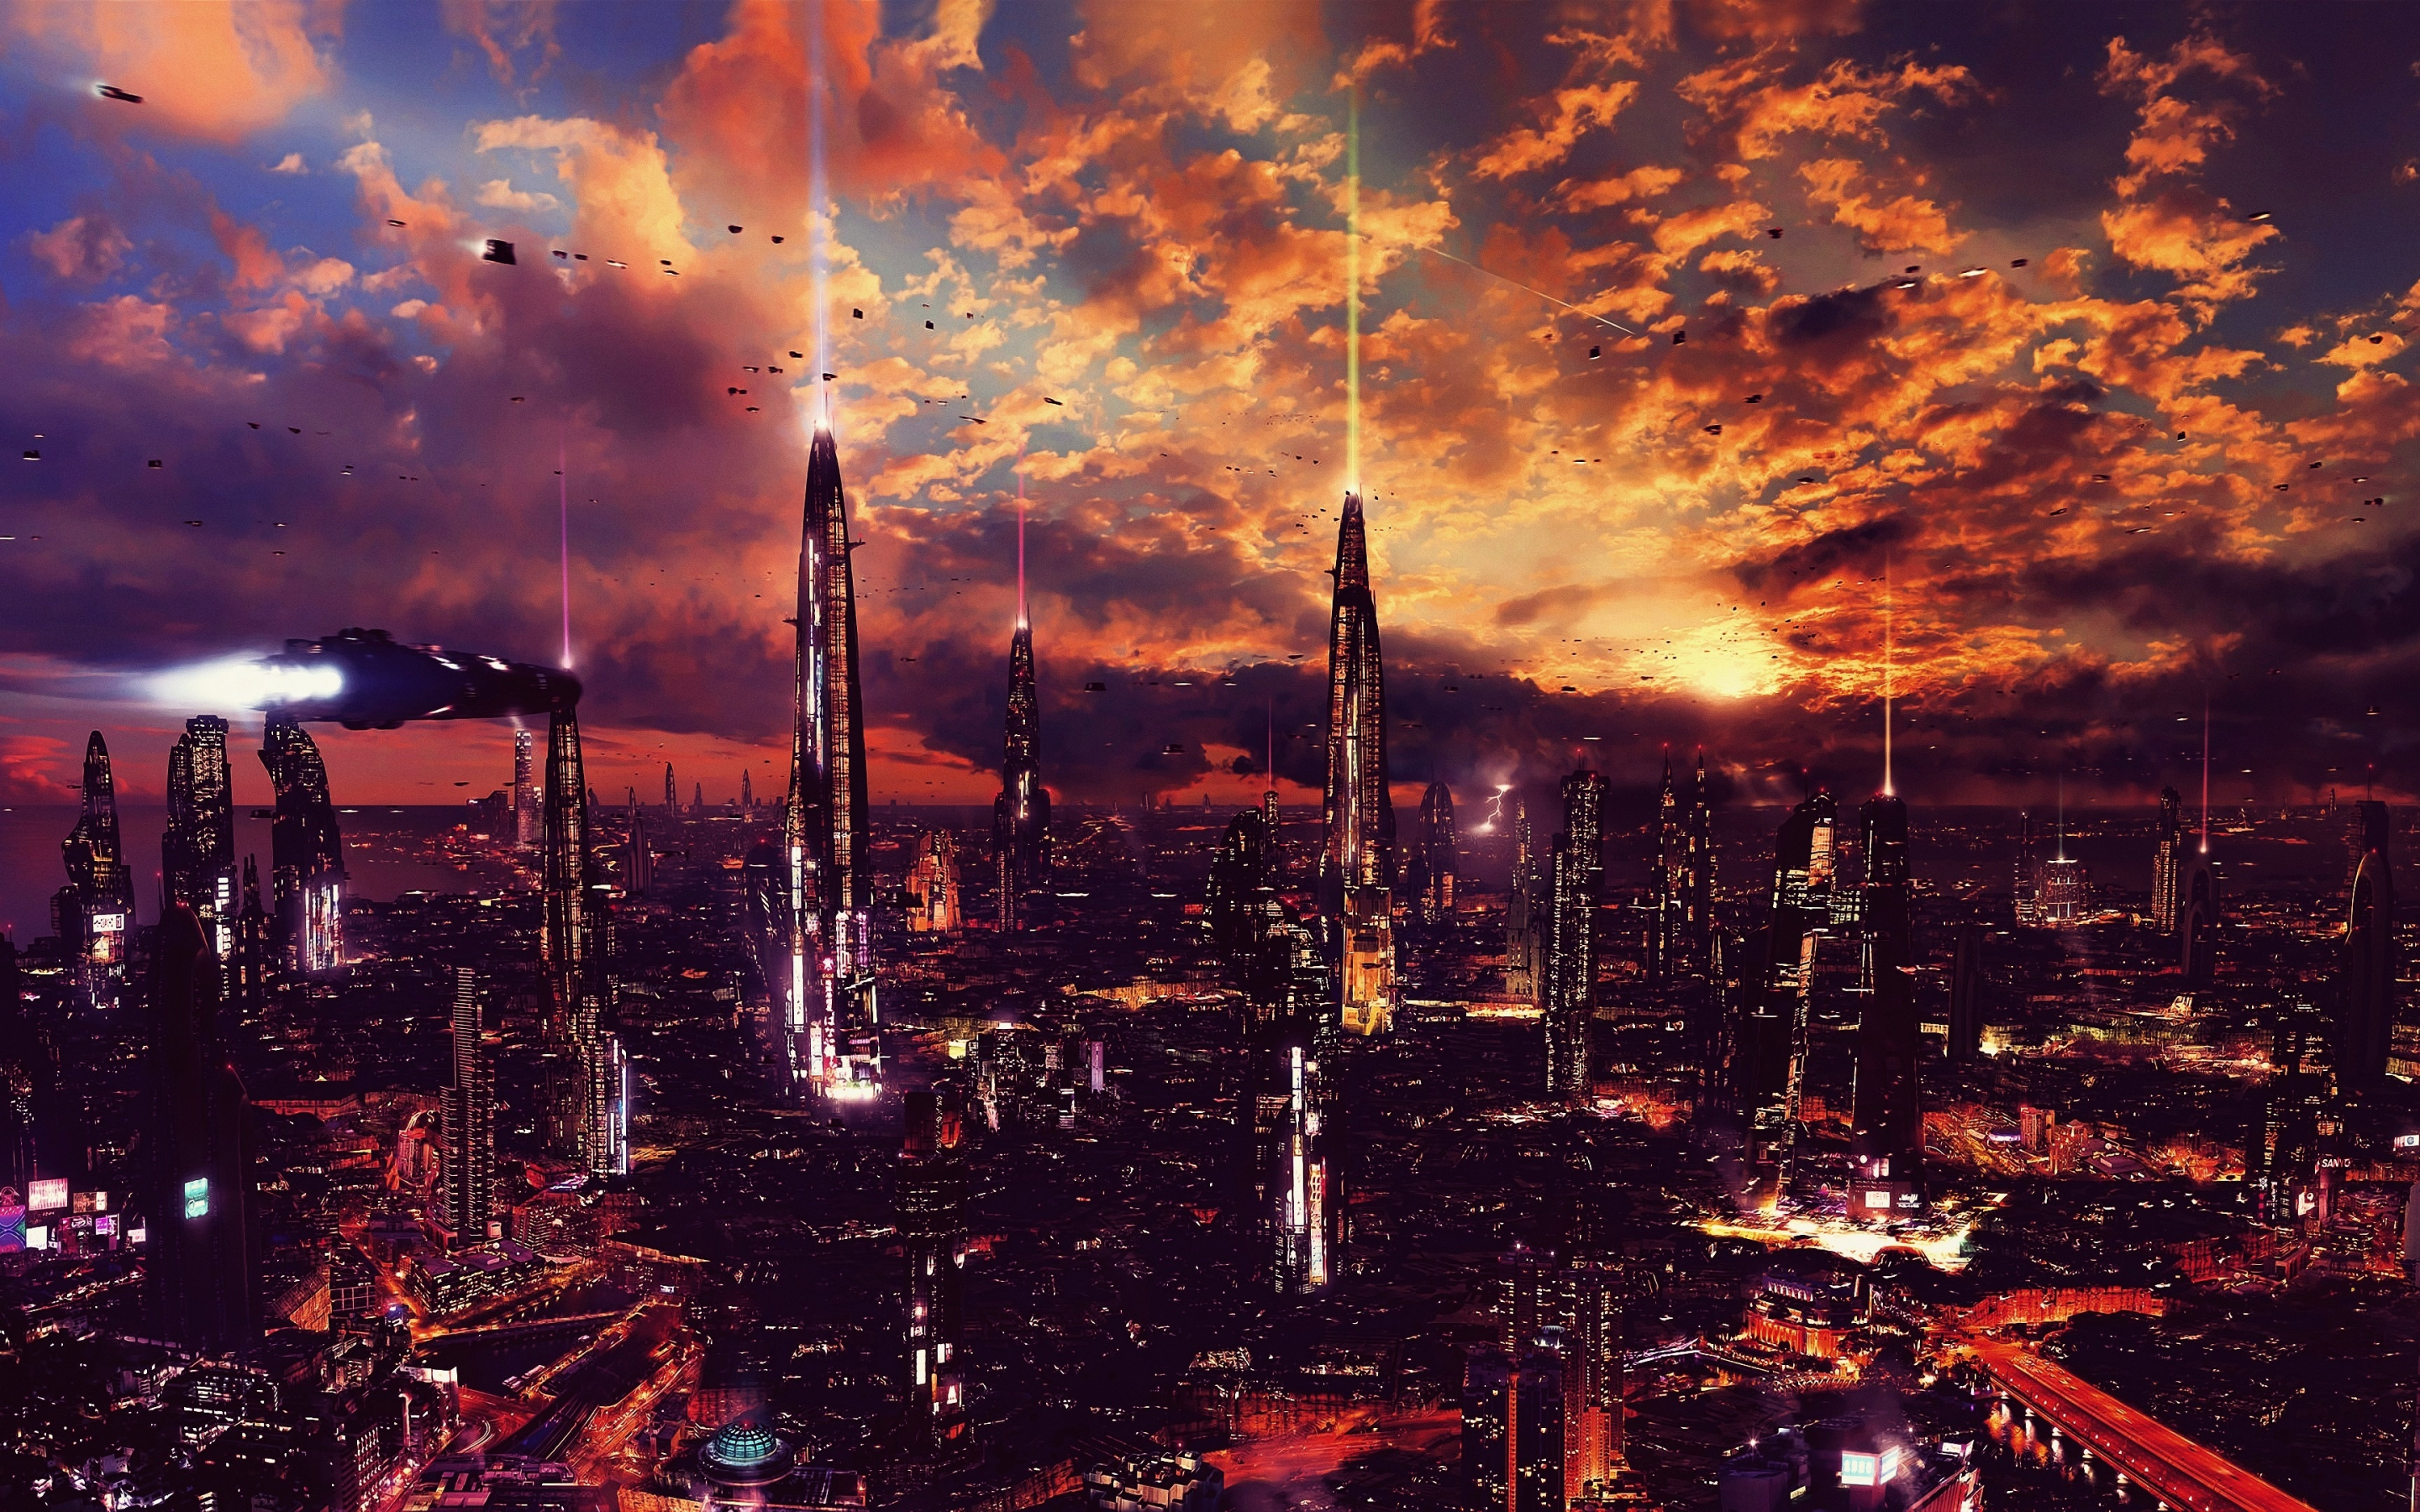 Futuristic city, science fiction, fantasy, artwork, 2880x1800 wallpaper